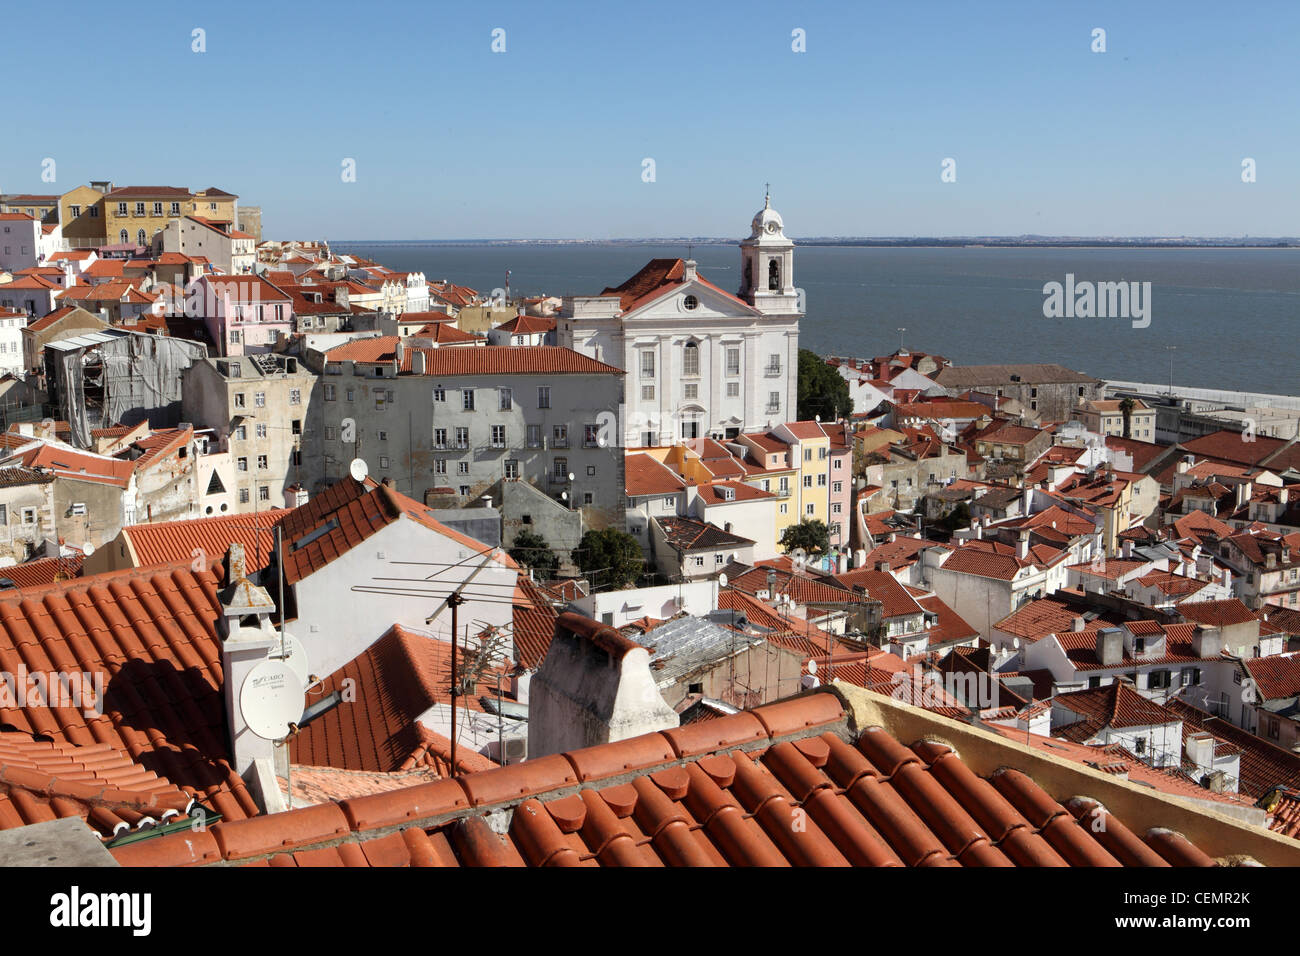 Vue sur les toits de tuiles rouges de la rivière Tejo, Lisboa à Lisbonne, Portugal, Europe Banque D'Images